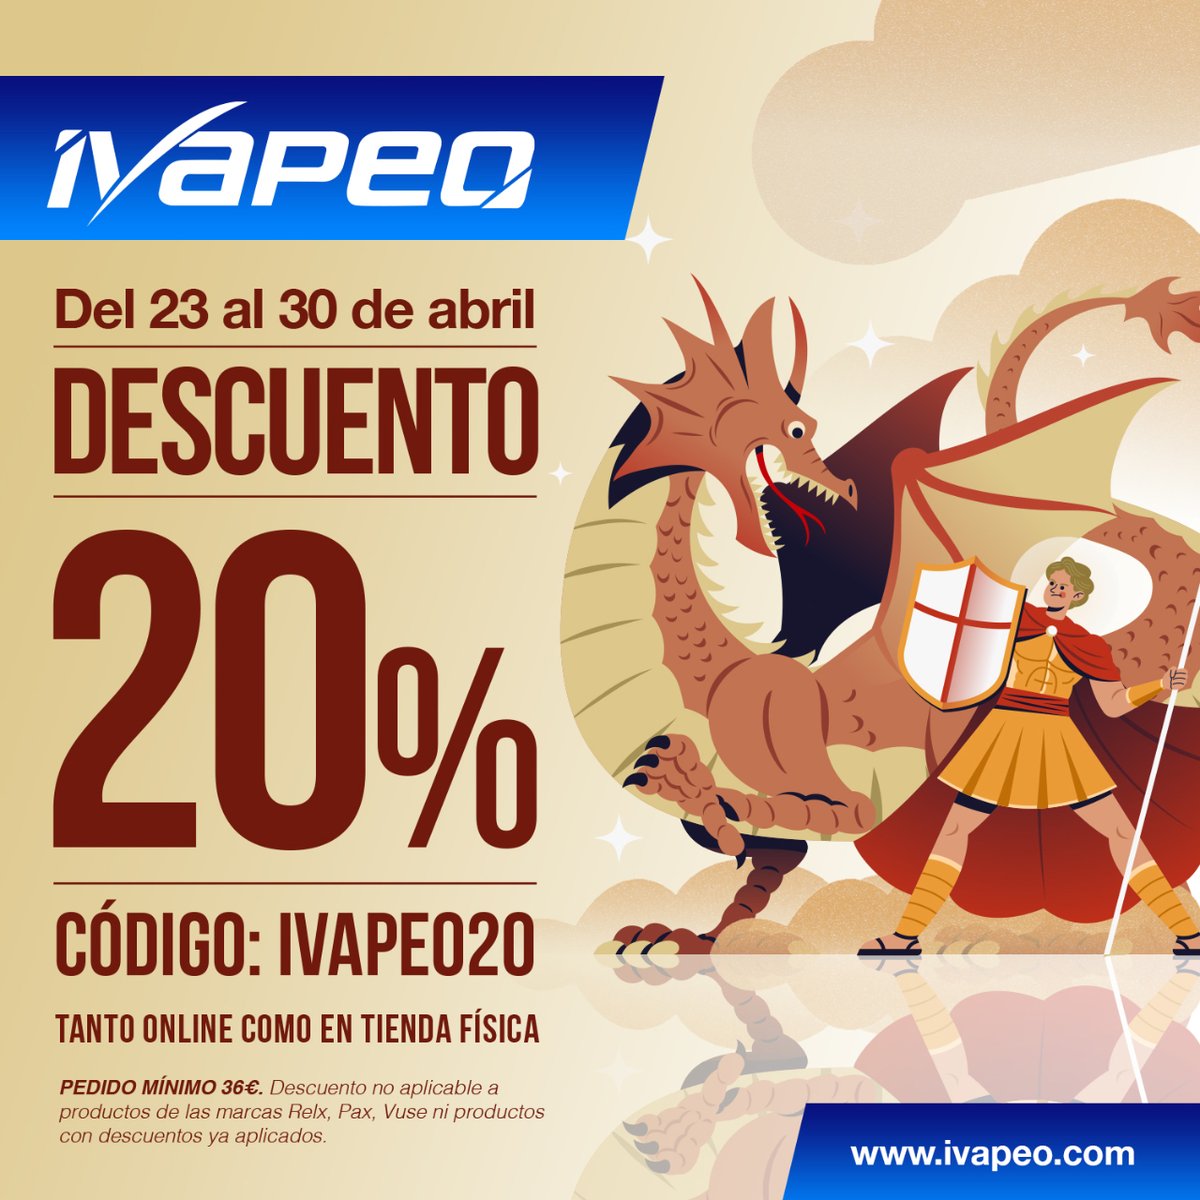 ¡Hey Vapers!

🌹🐉 En iVapeo celebramos Sant Jordi con una oferta especial: ¡20% de descuento en toda nuestra tienda hasta el 30 de abril! 

¡No te pierdas esta oportunidad única!

#ivapeo #barcelona #bcn #vapeo #vape #SantJordi #descuento #vapelife